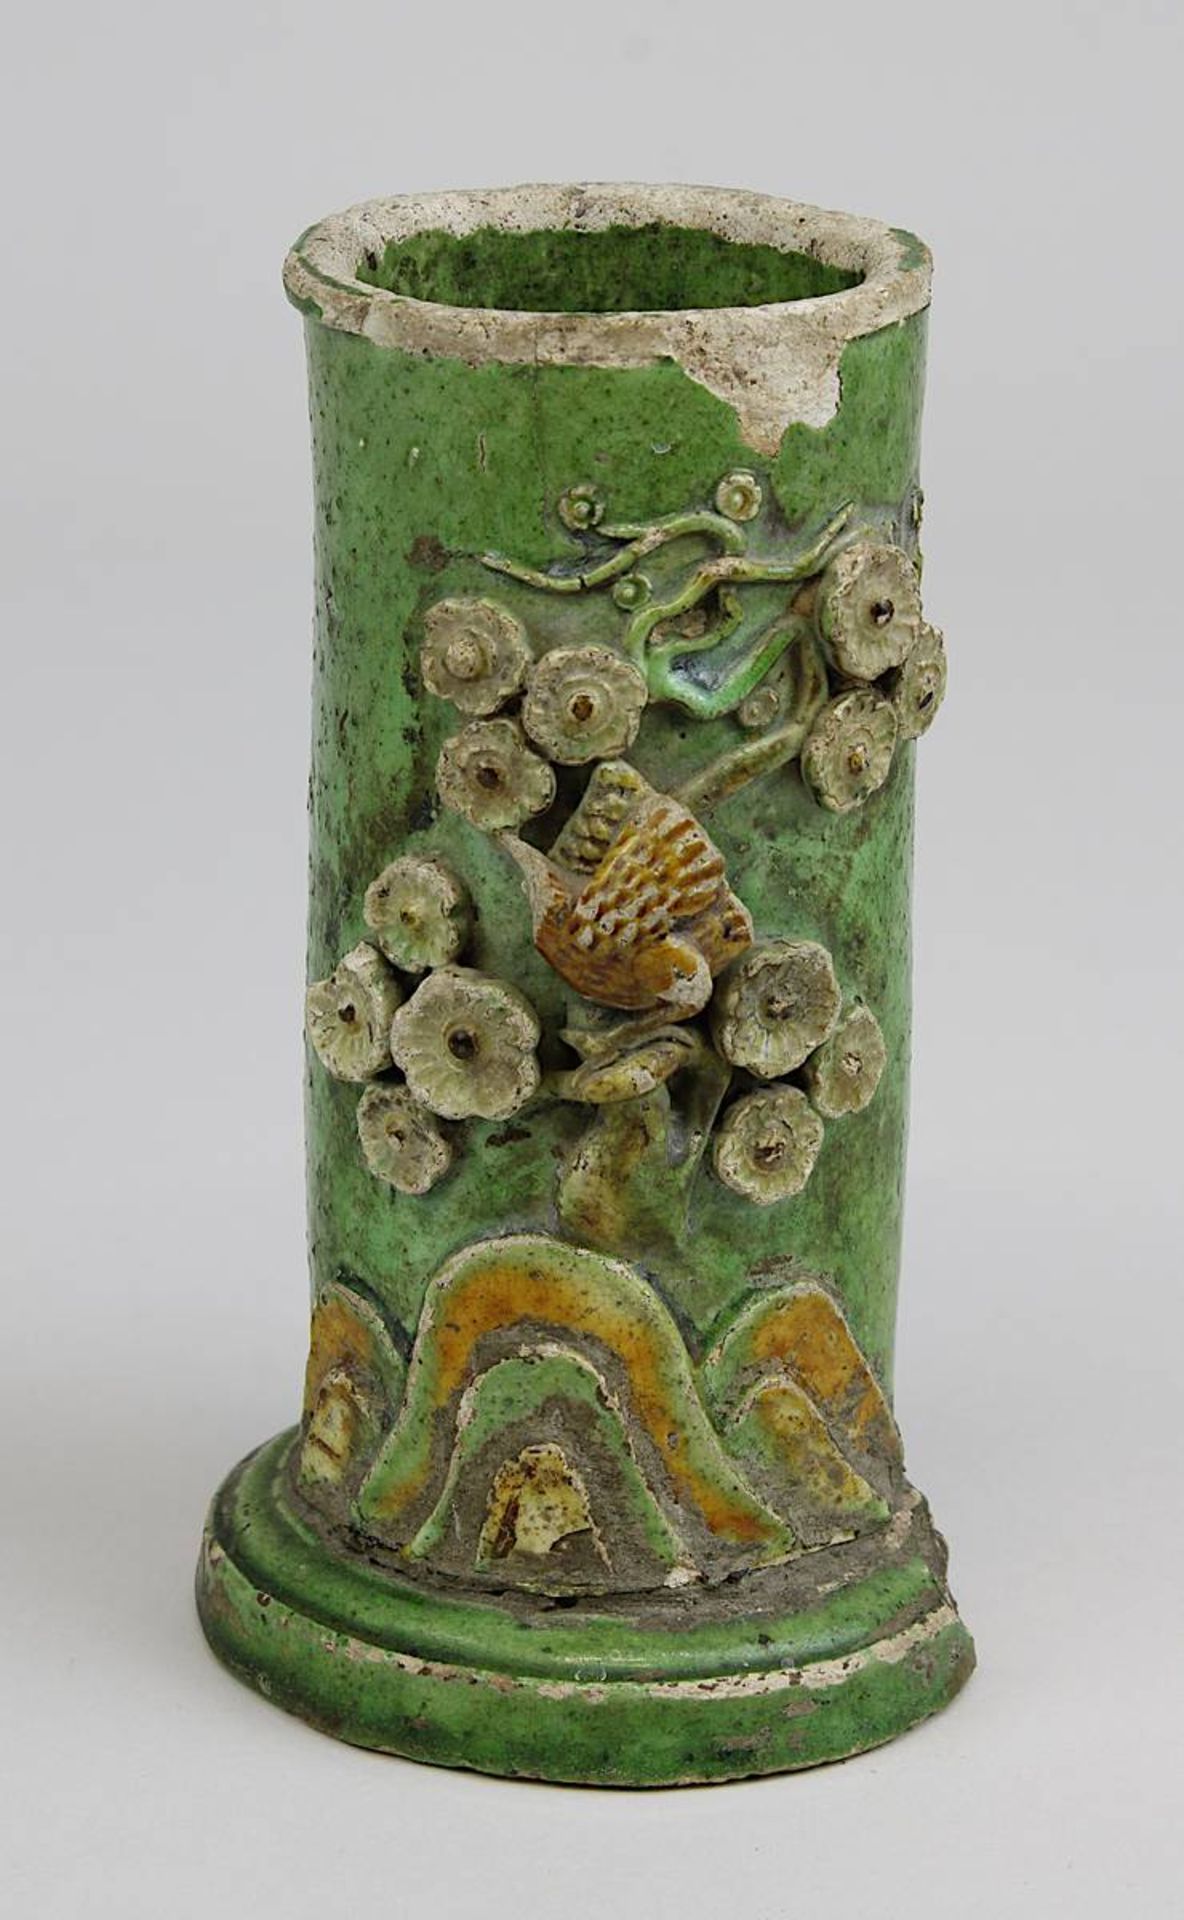 Pinselbecher, China 19. Jh., Keramik grün und gelb glasiert, Schauseite mit plastischem Dekor von